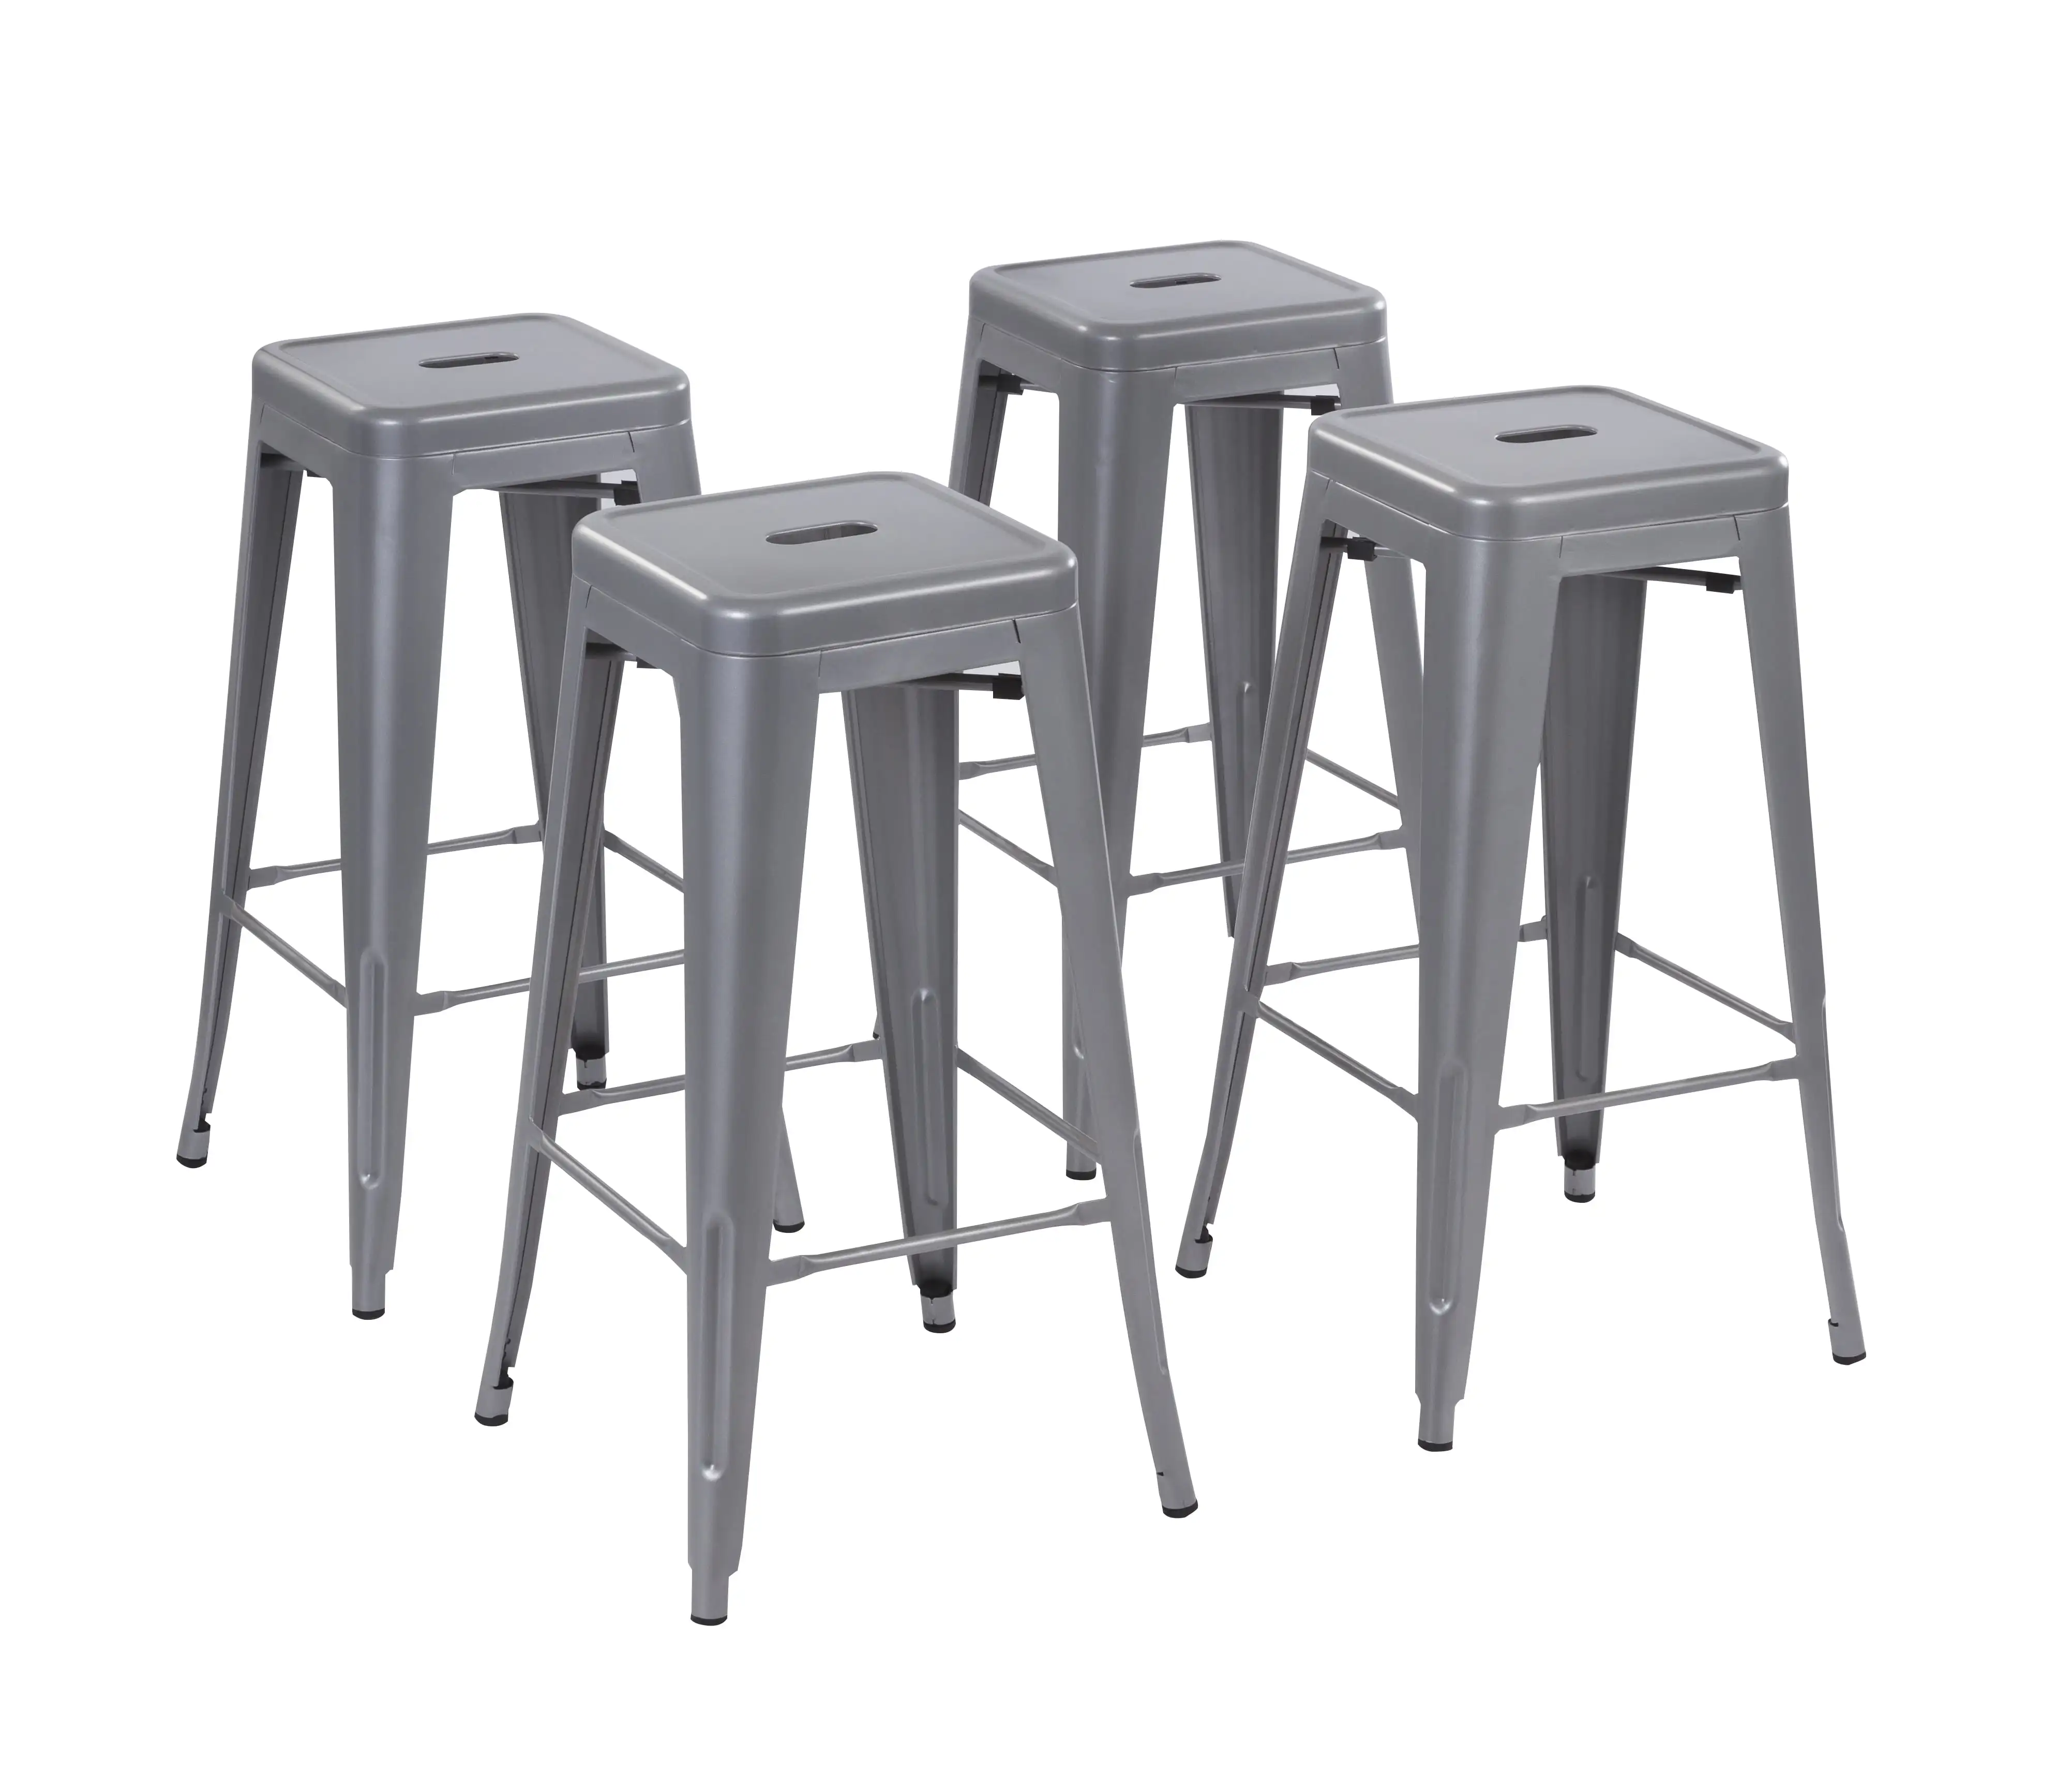 

Набор из 4 стульев с открытой спиной, кухонный остров, 30 дюймов, серебристые металлические барные стулья, штабелируемые